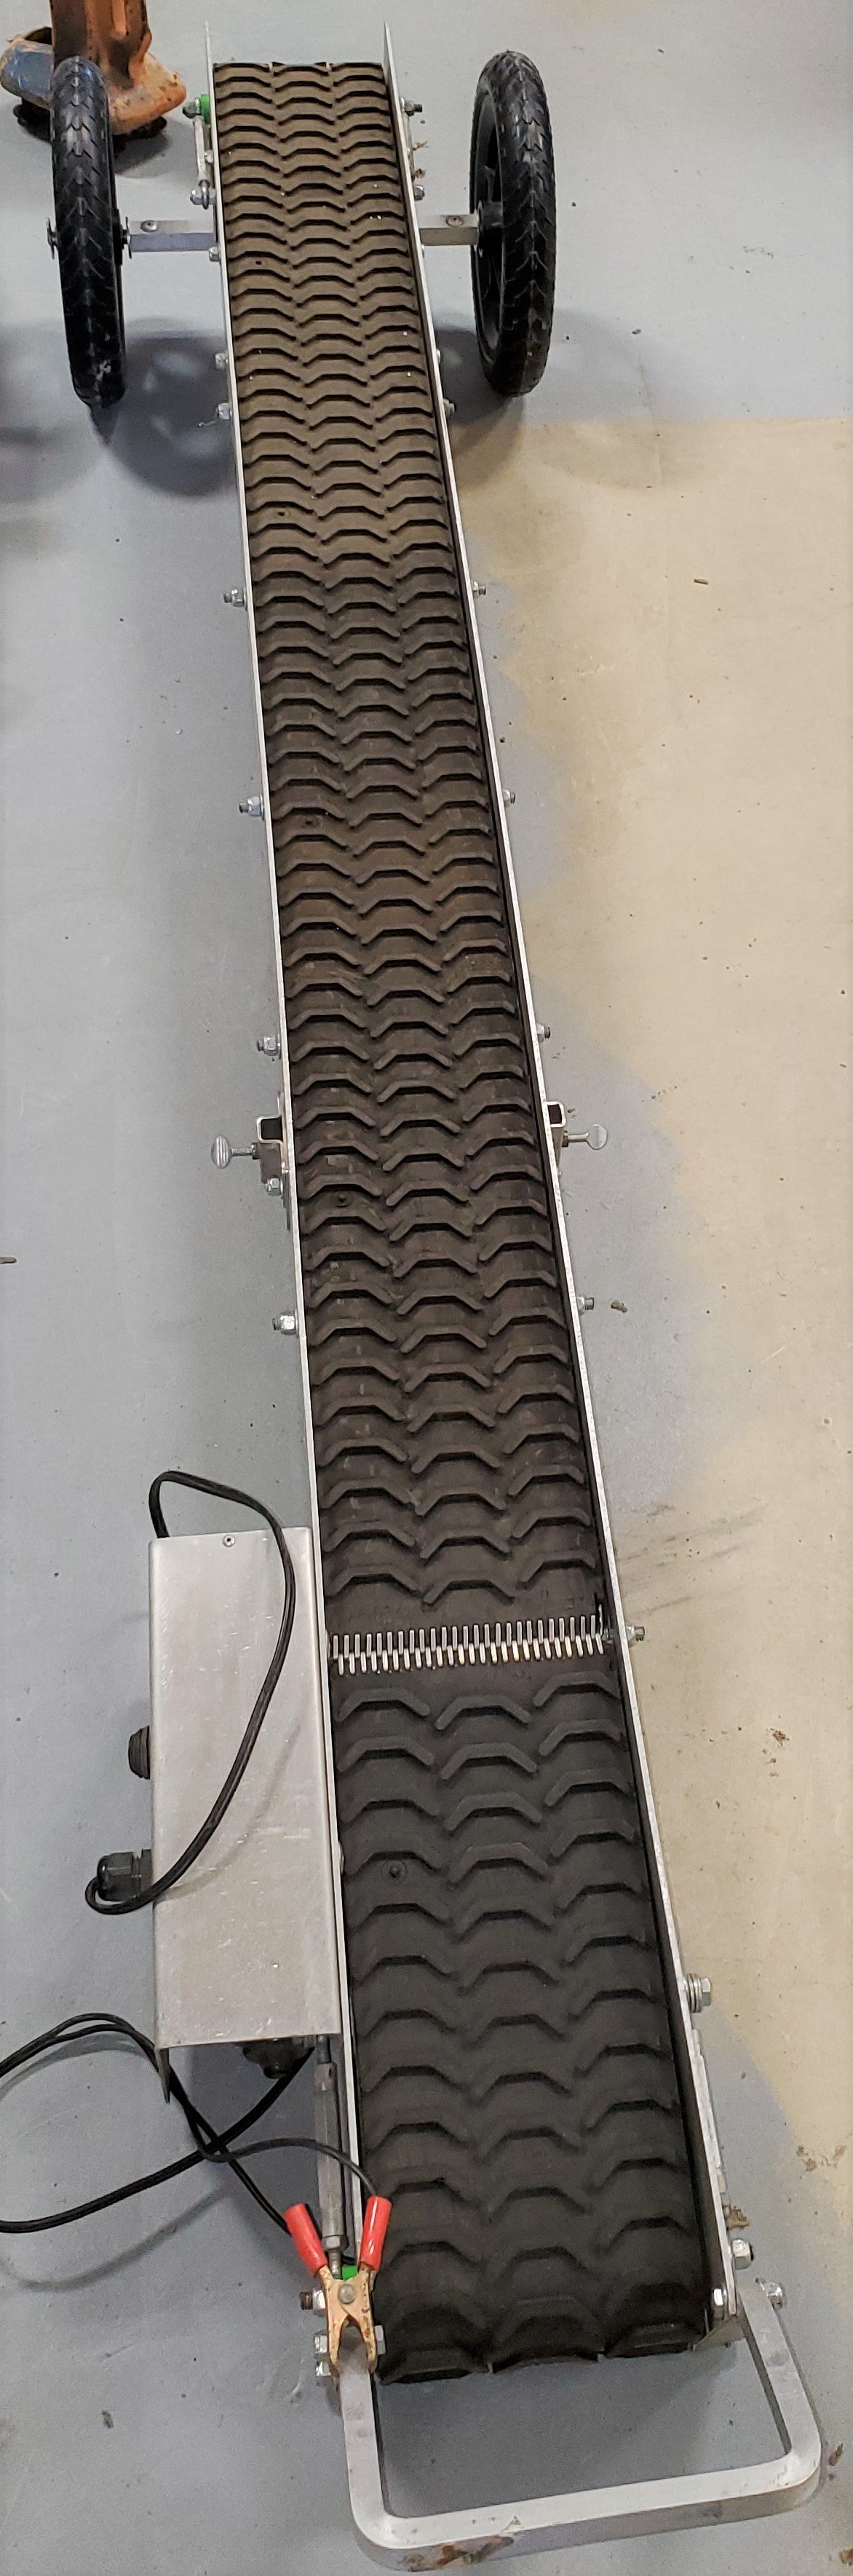 6 foot conveyor belt